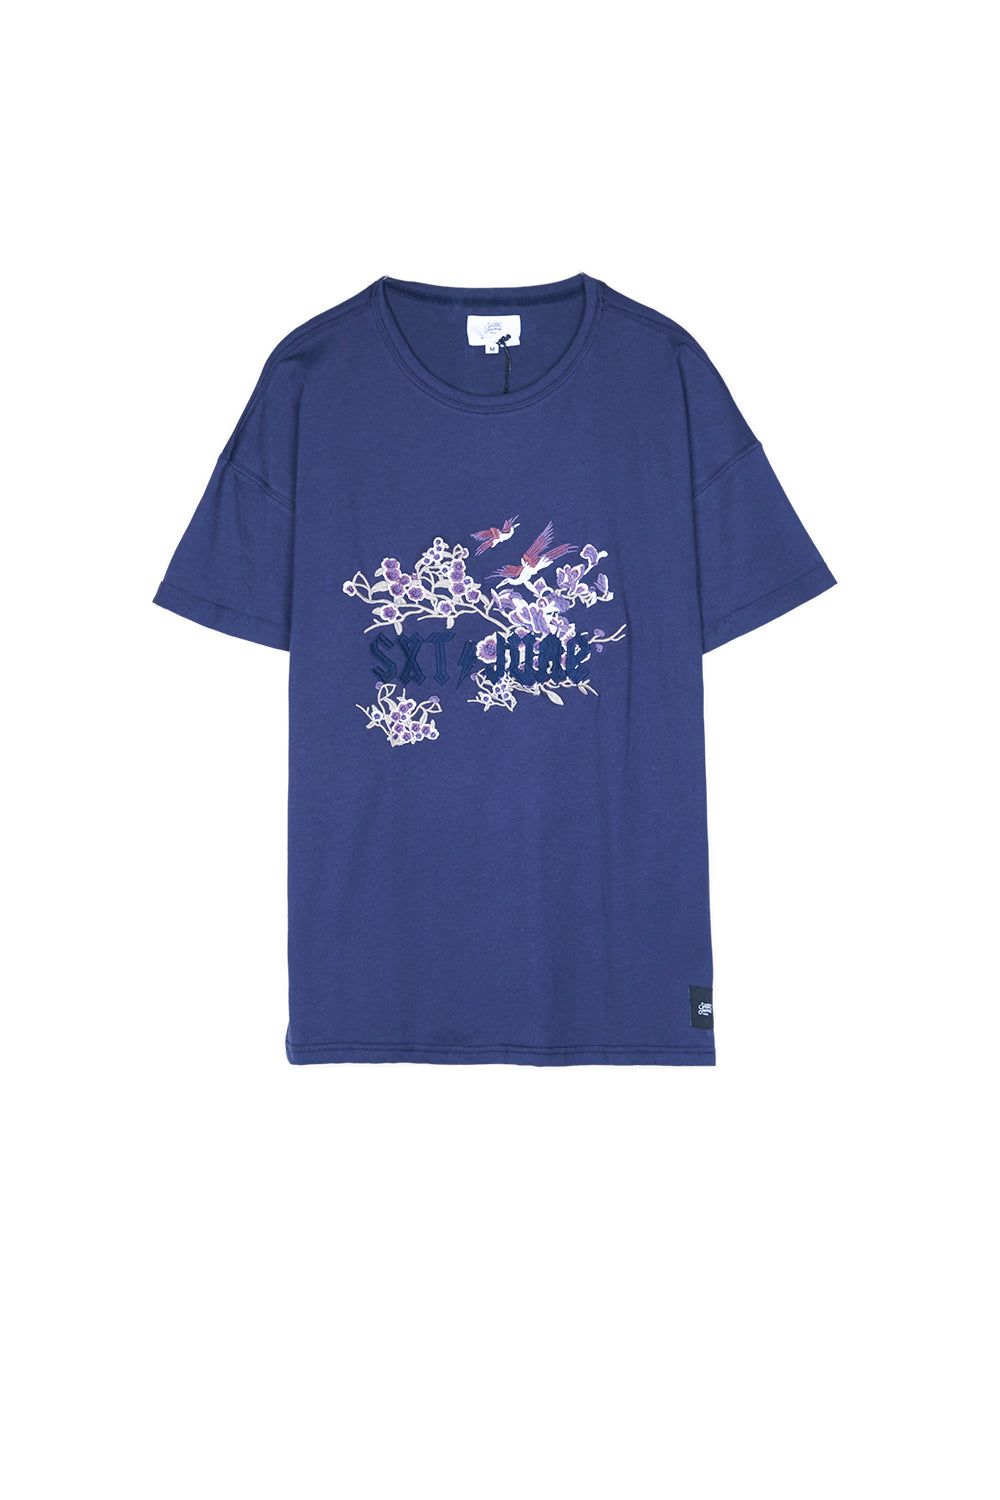 Sixth June - T-shirt brodé fleuri bleu foncé